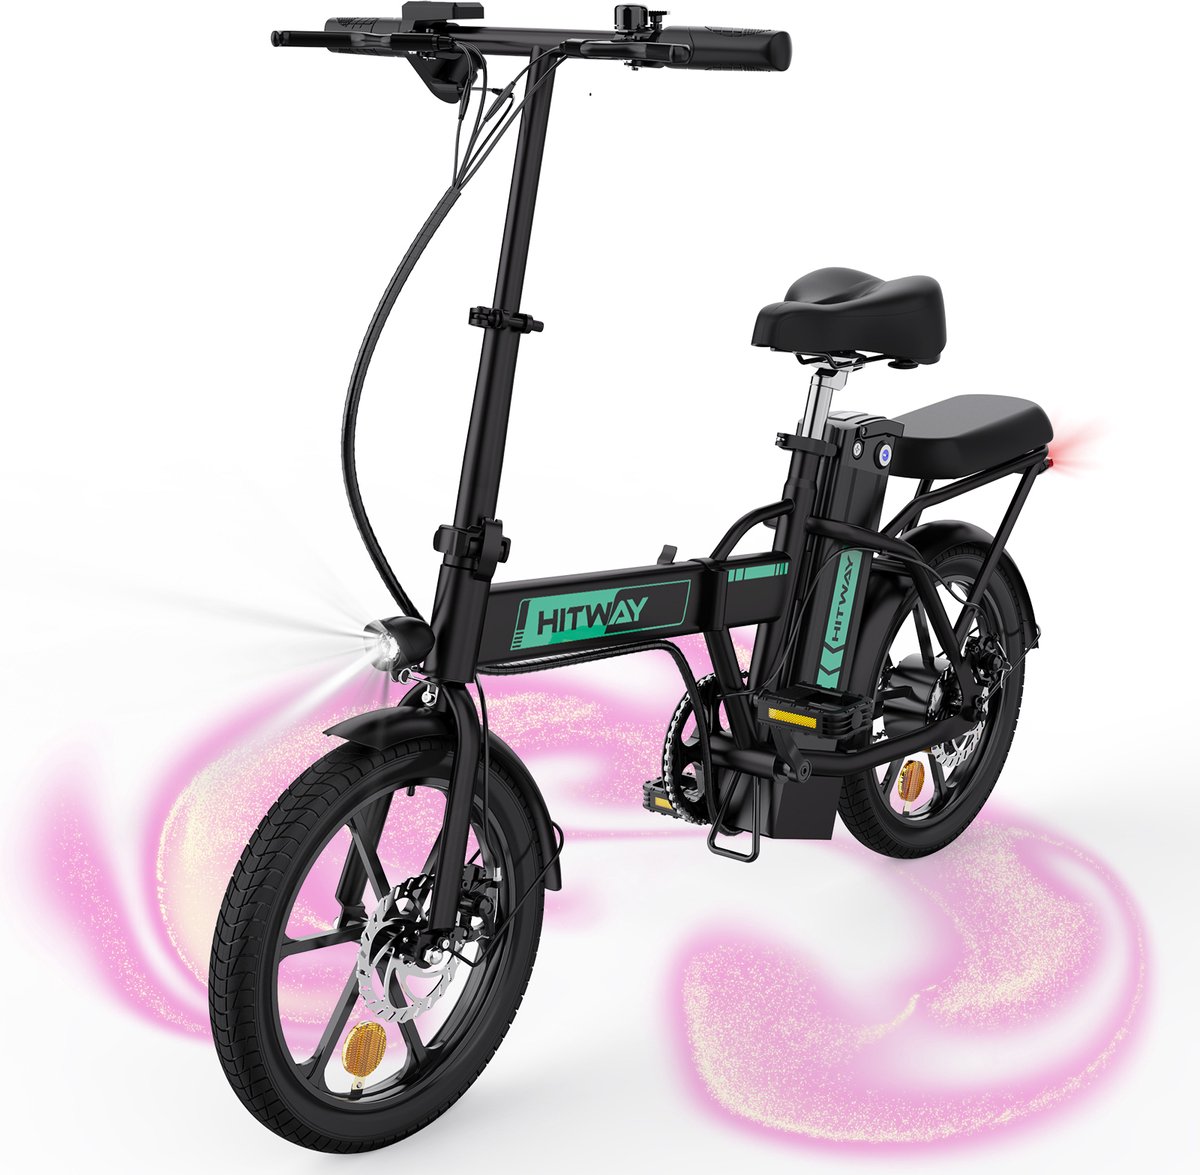 HITWAY E Bike elektrische fiets vouwfiets, City EBike voor heren en dames, 36V/8.4Ah batterij, 25km/h, 35-70km, 16